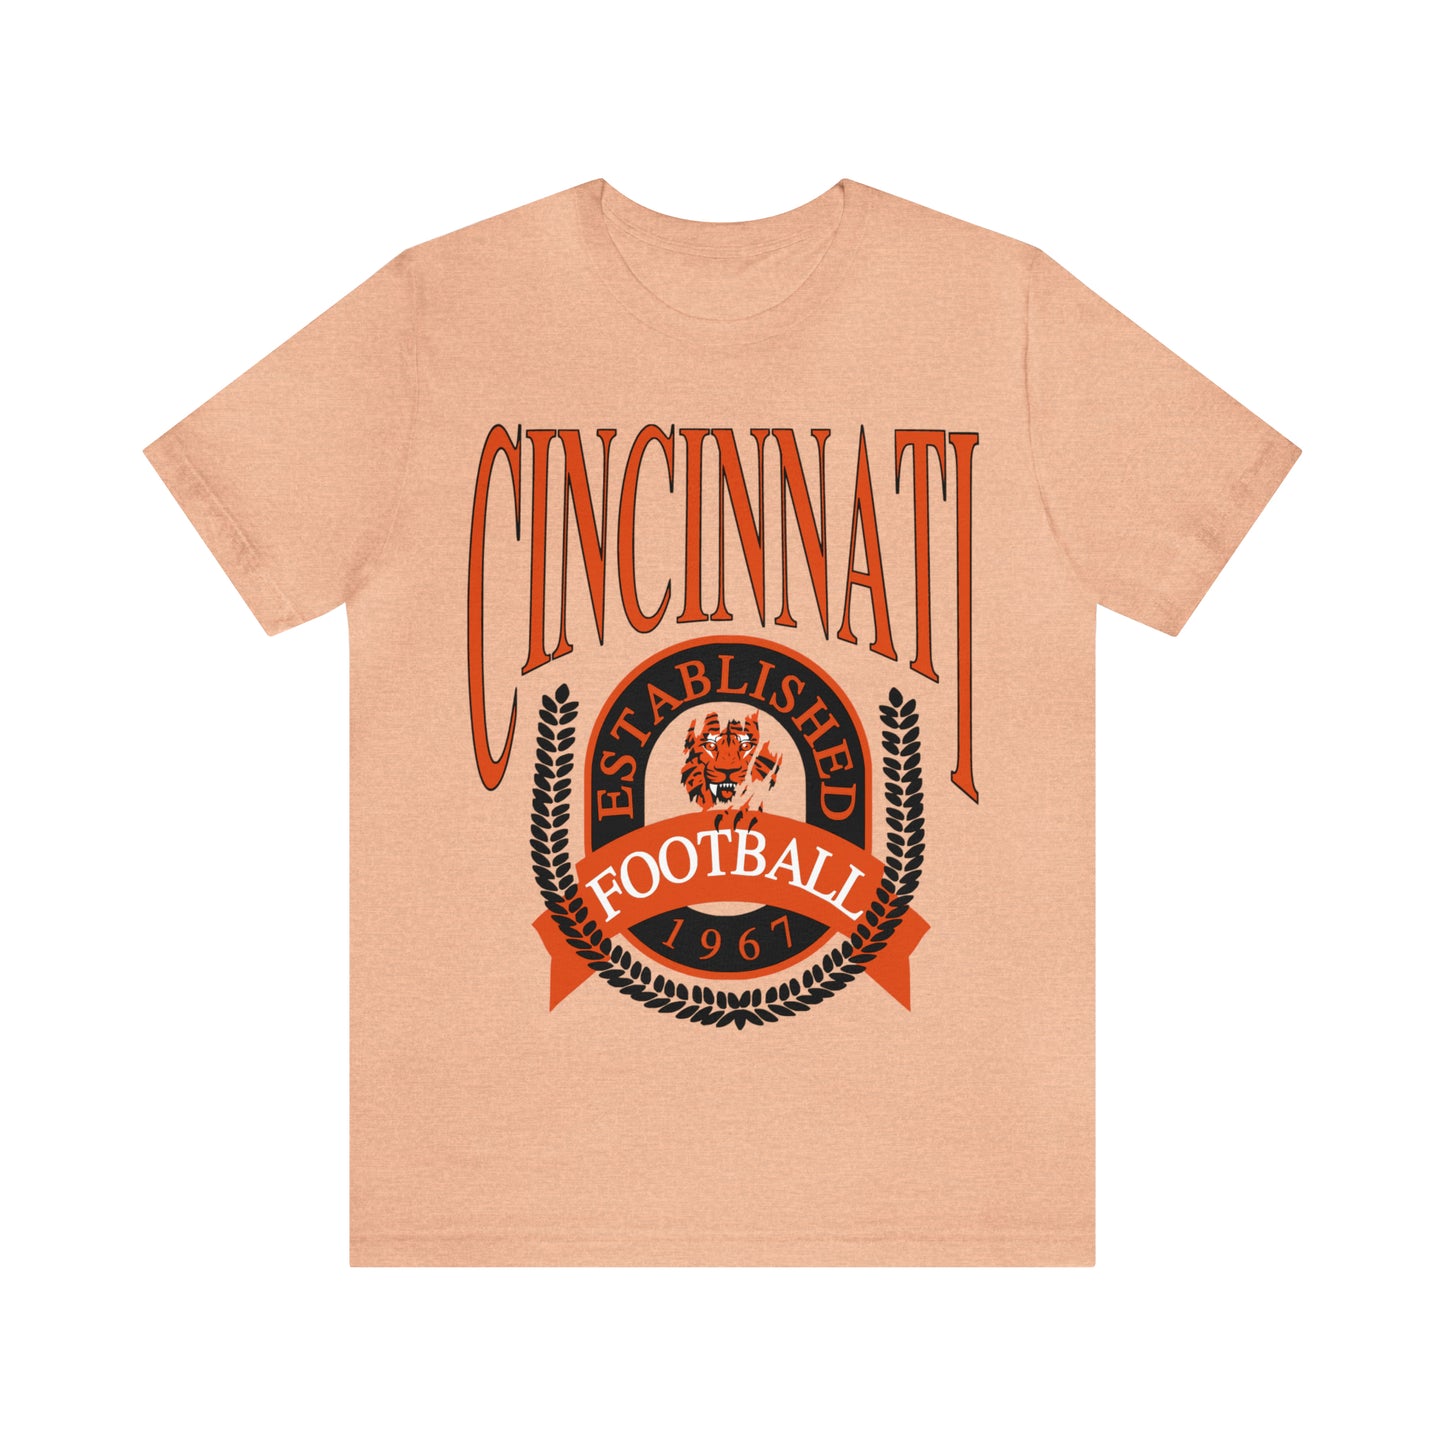 Cincinnati Bengals T-Shirt - Vintage Short Sleeve Bengals Tee - NFL Football Oversized Unisex, Men's & Women's Apparel - Design 1 Orange